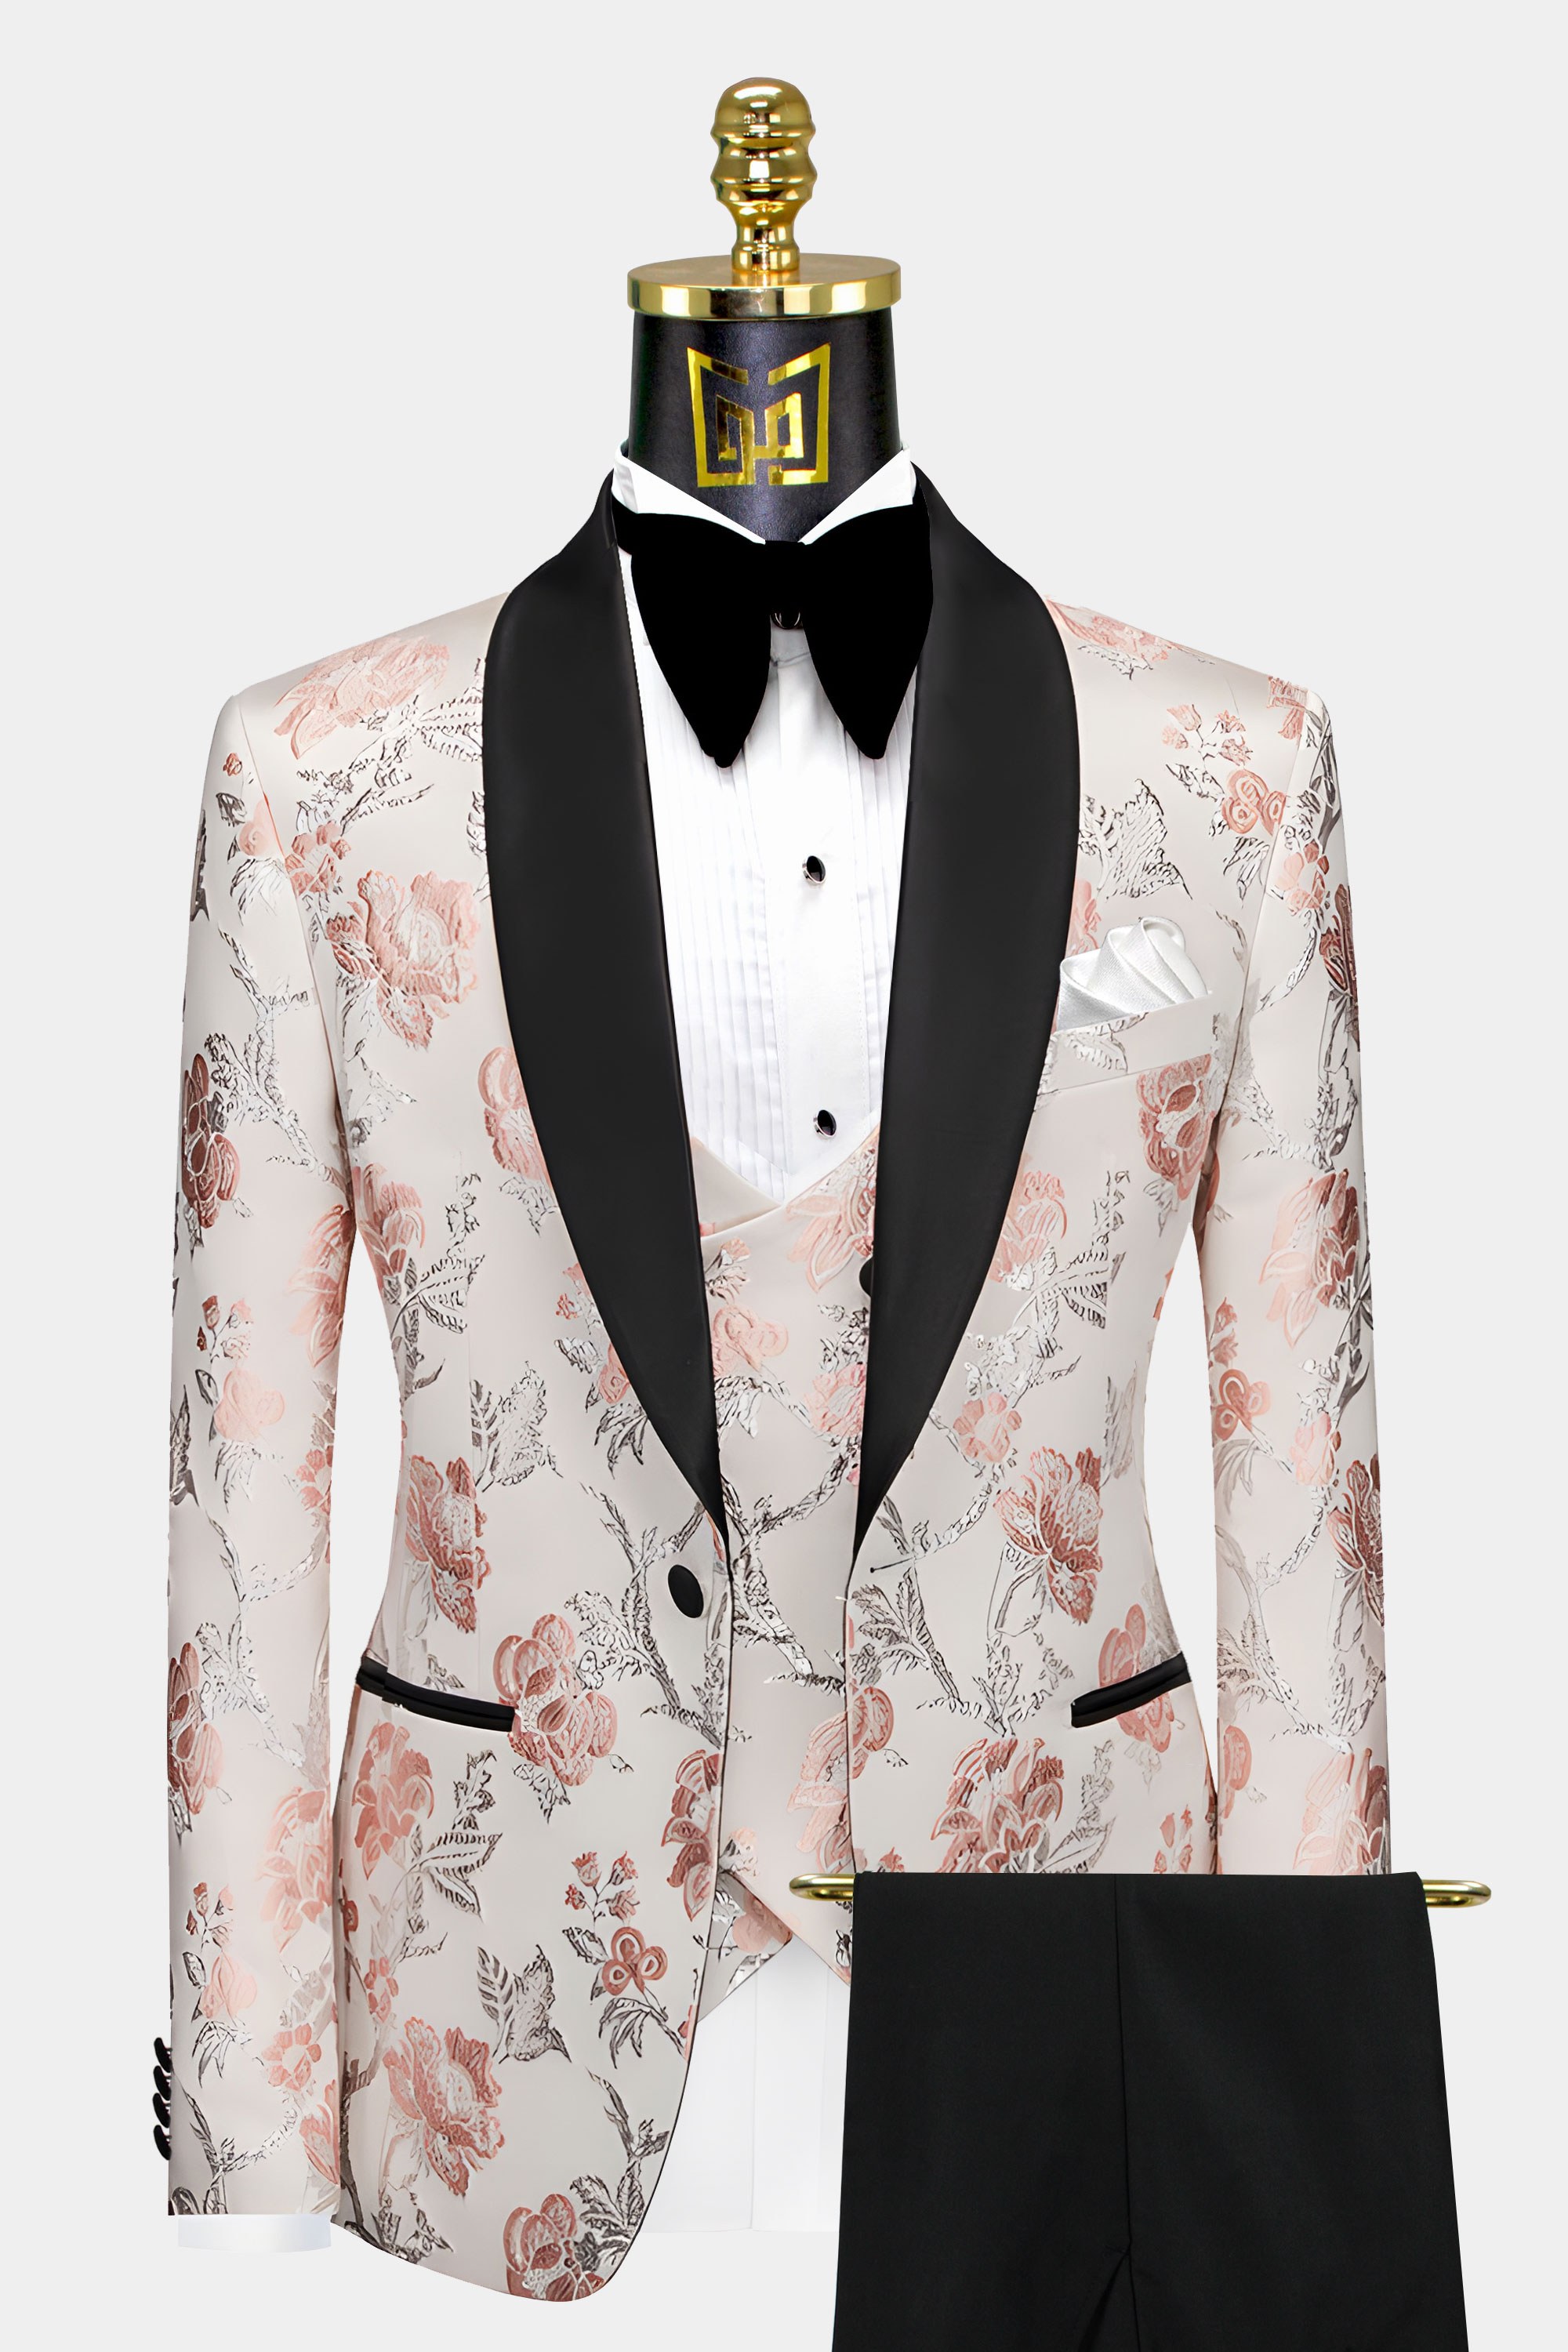 Mens-Rose-Gold-Tuxedo-Wedding-Groom-Suit-from-Gentlemansguru.com